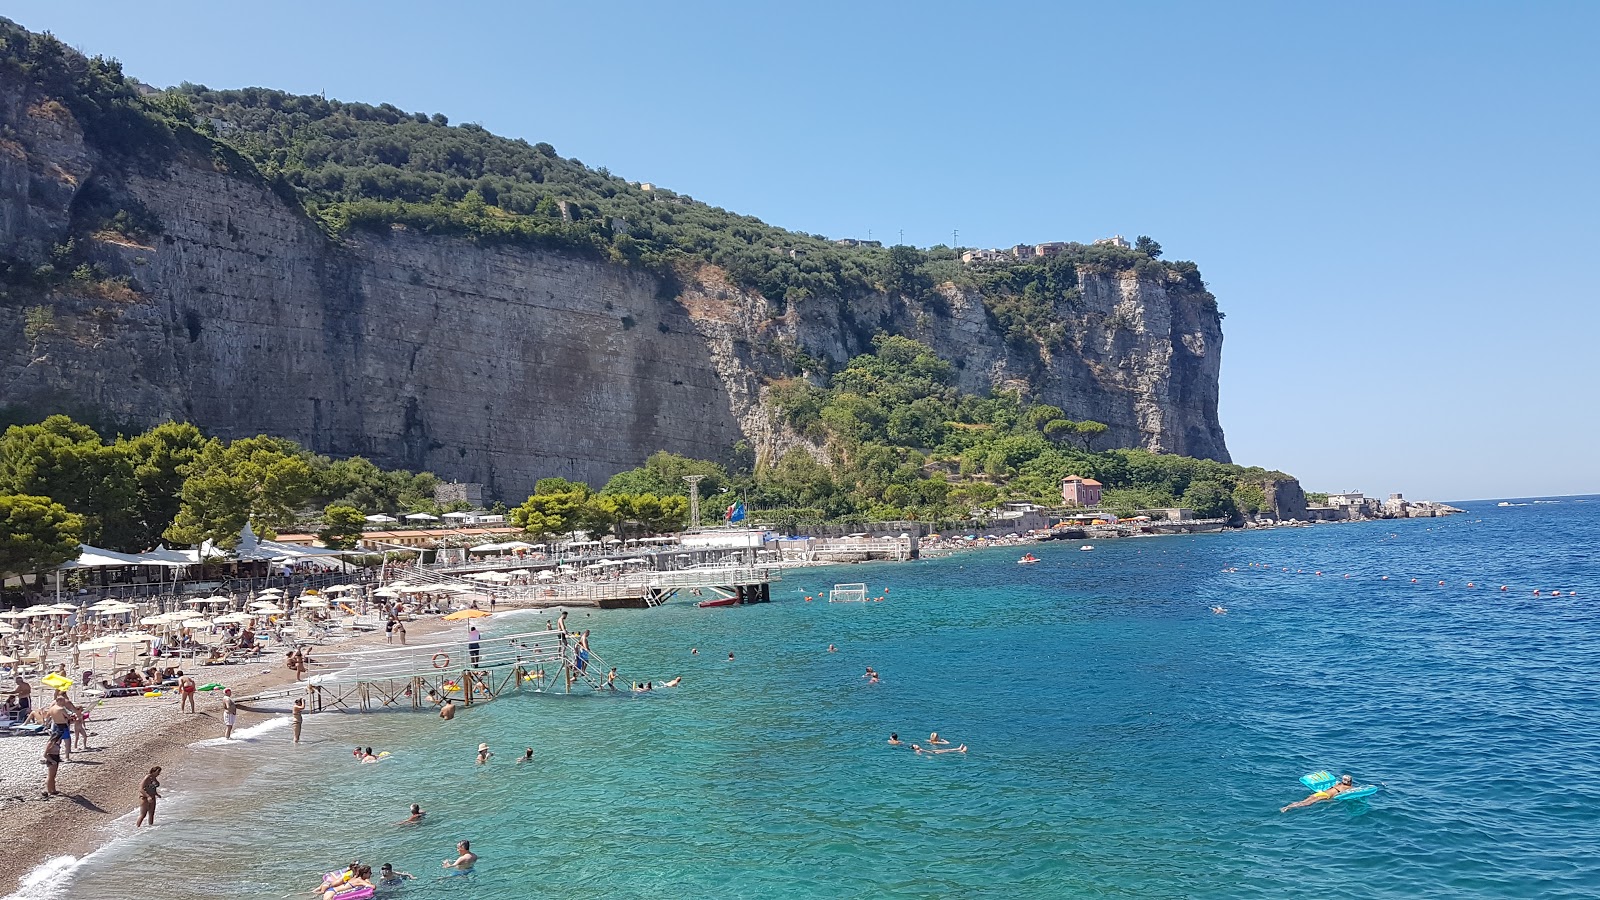 Foto av Spiaggia Seiano med grå fin sten yta